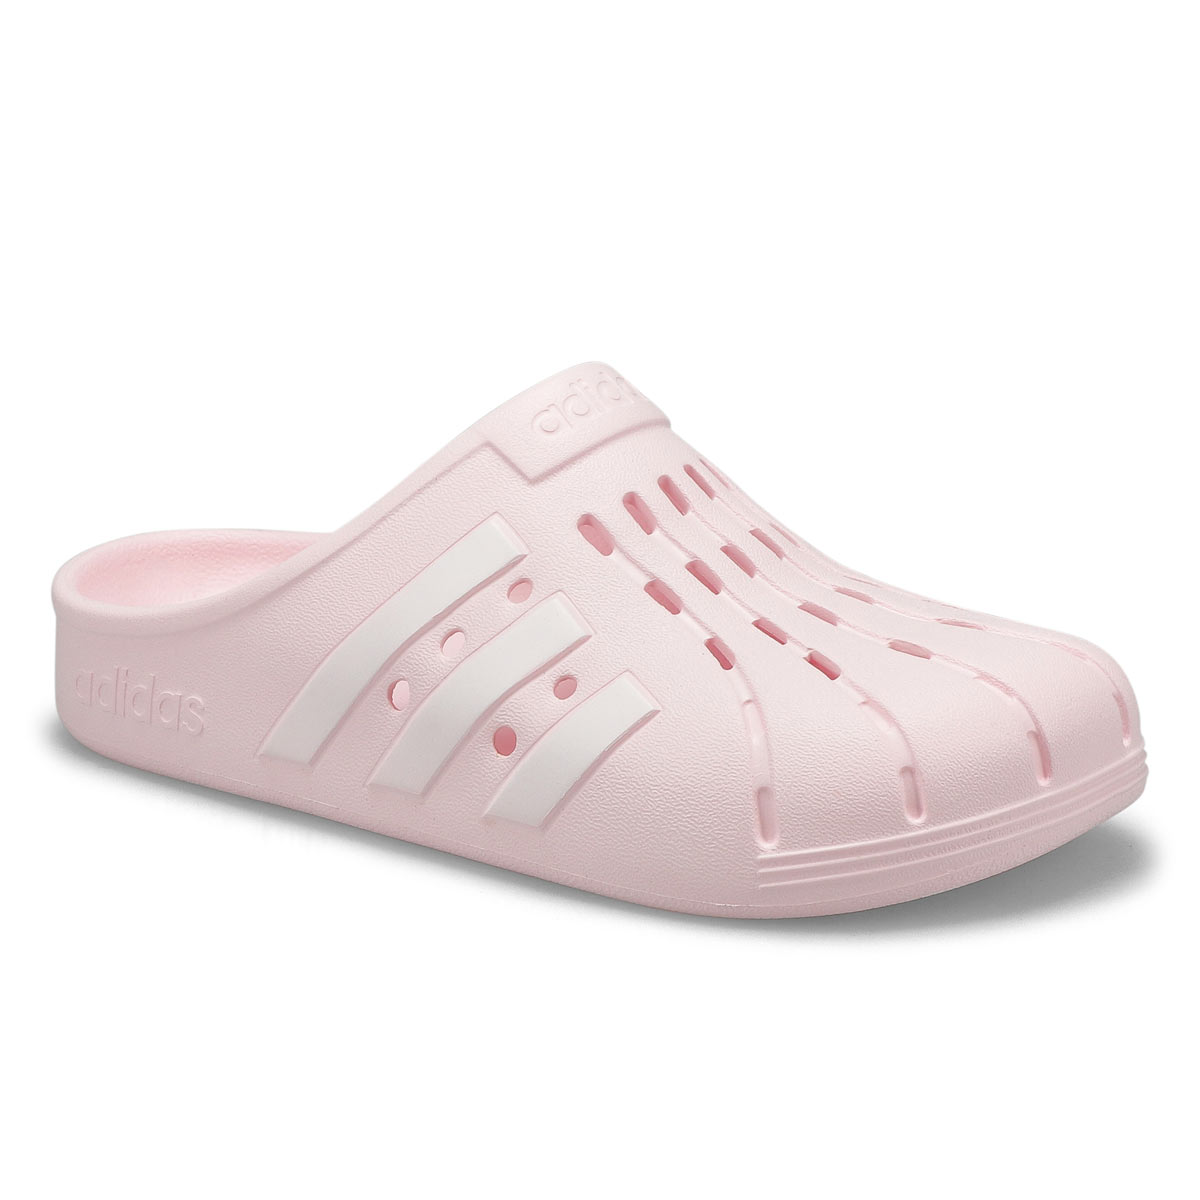 Women's Adilette Clog Slip On Shoe - Pink/White